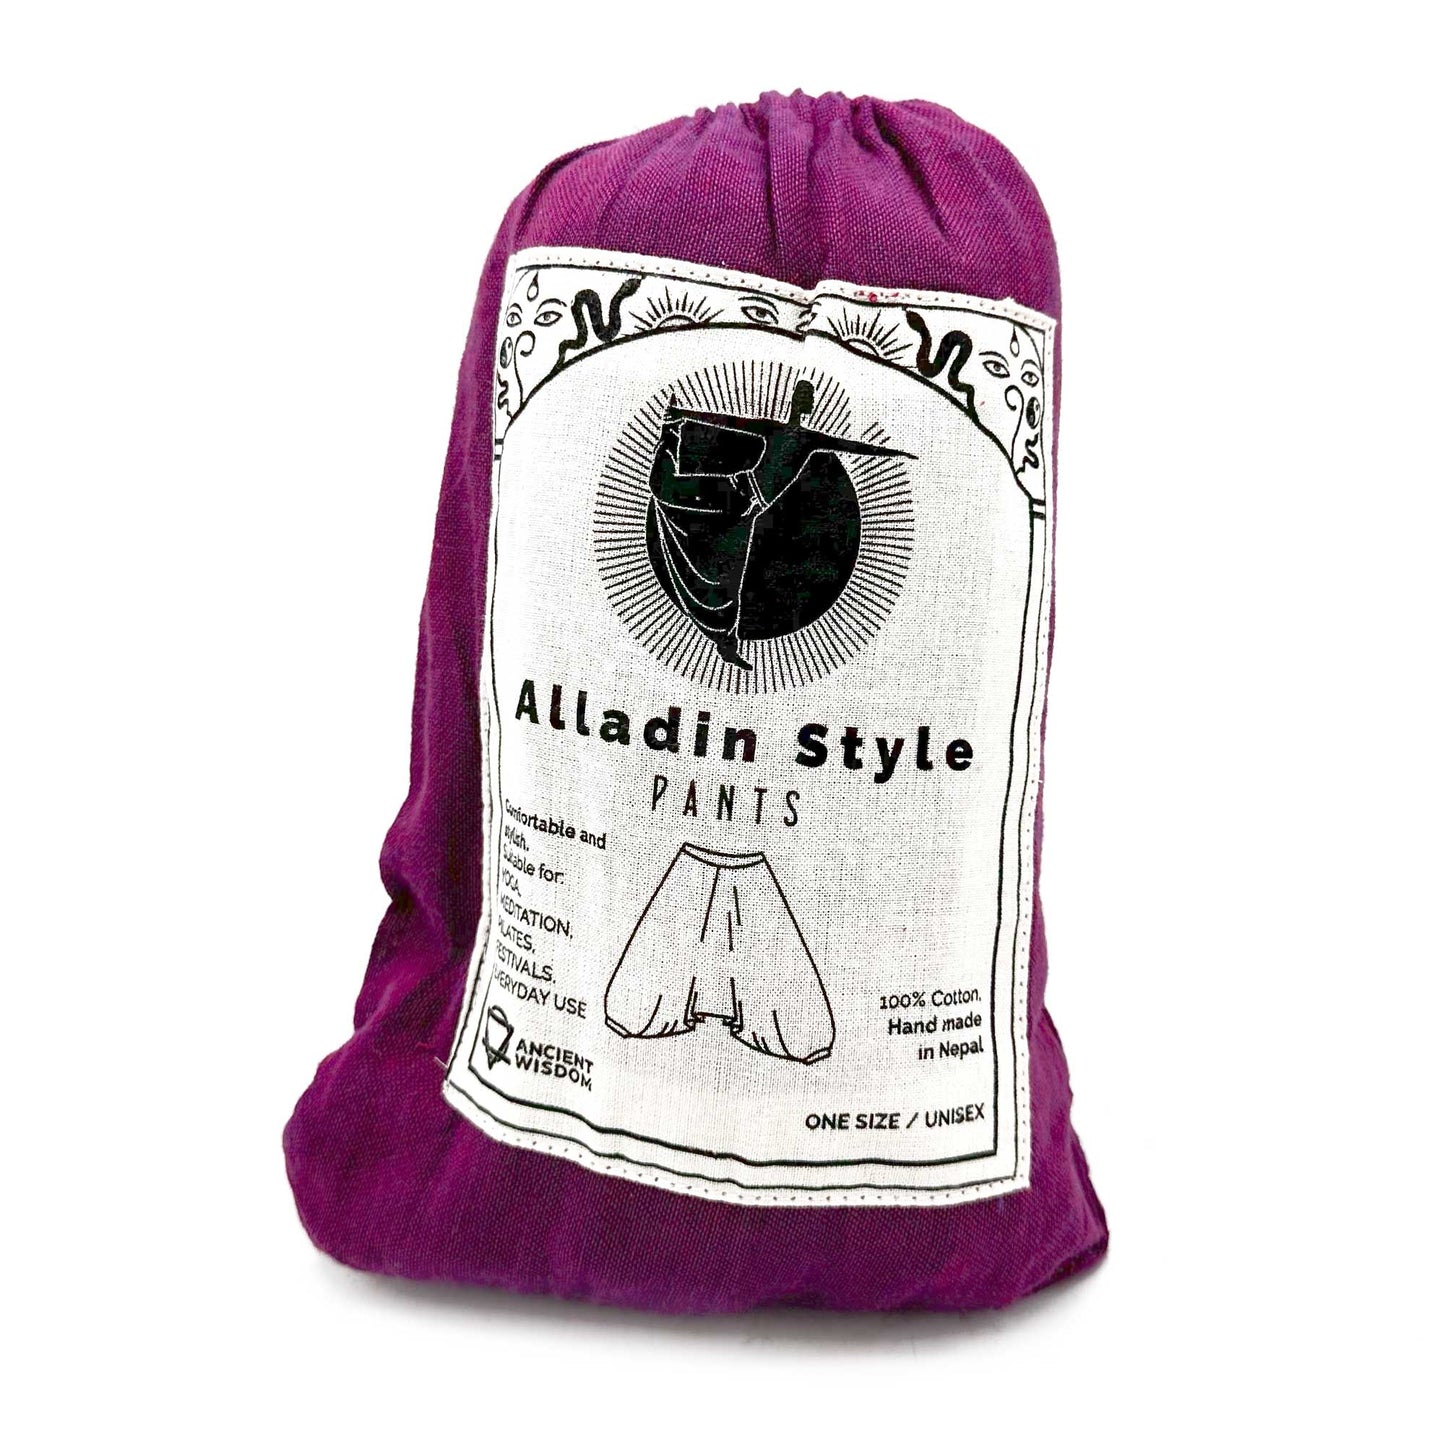 Yoga and Festival Pants - Aladdin Himalayan Print on Purple